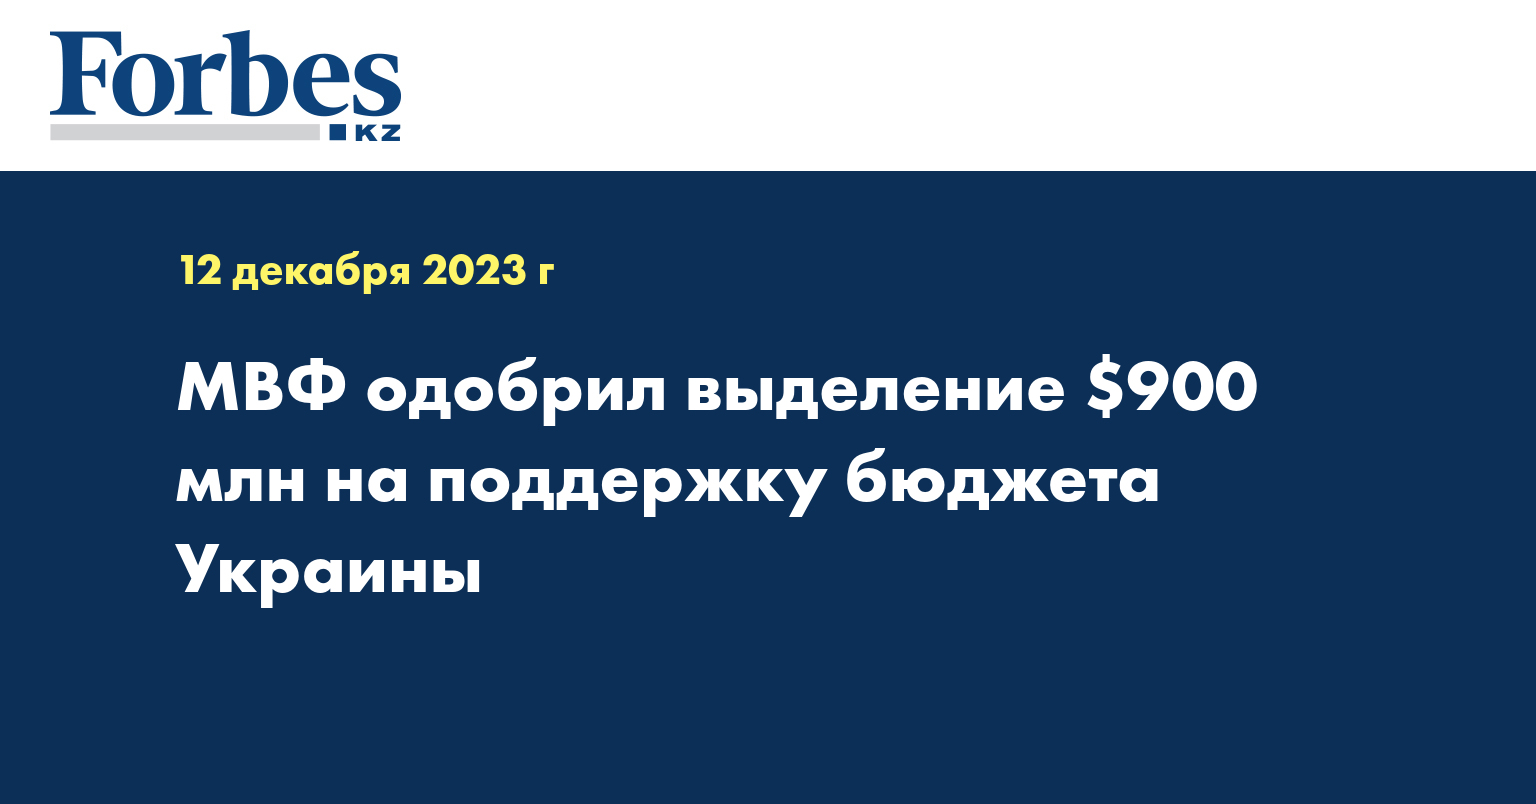 МВФ одобрил выделение $900 млн на поддержку бюджета Украины